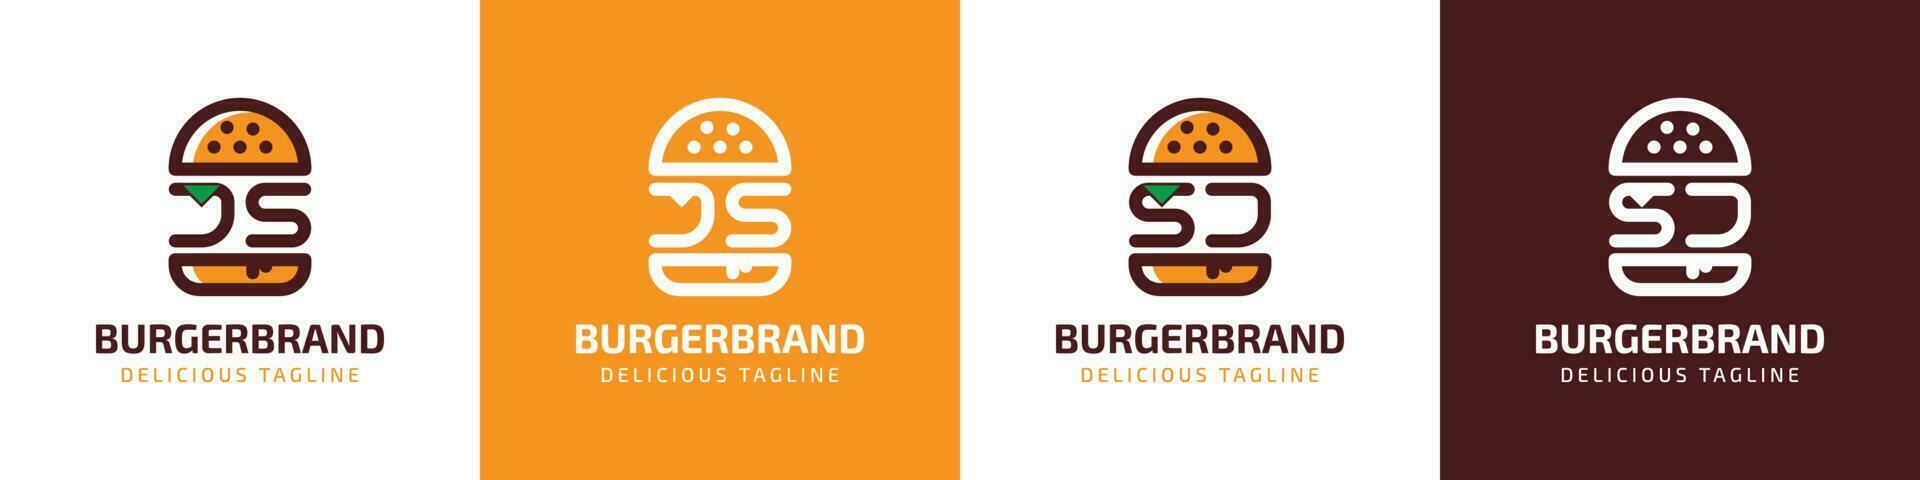 carta js e sj hamburguer logotipo, adequado para qualquer o negócio relacionado para hamburguer com js ou sj iniciais. vetor